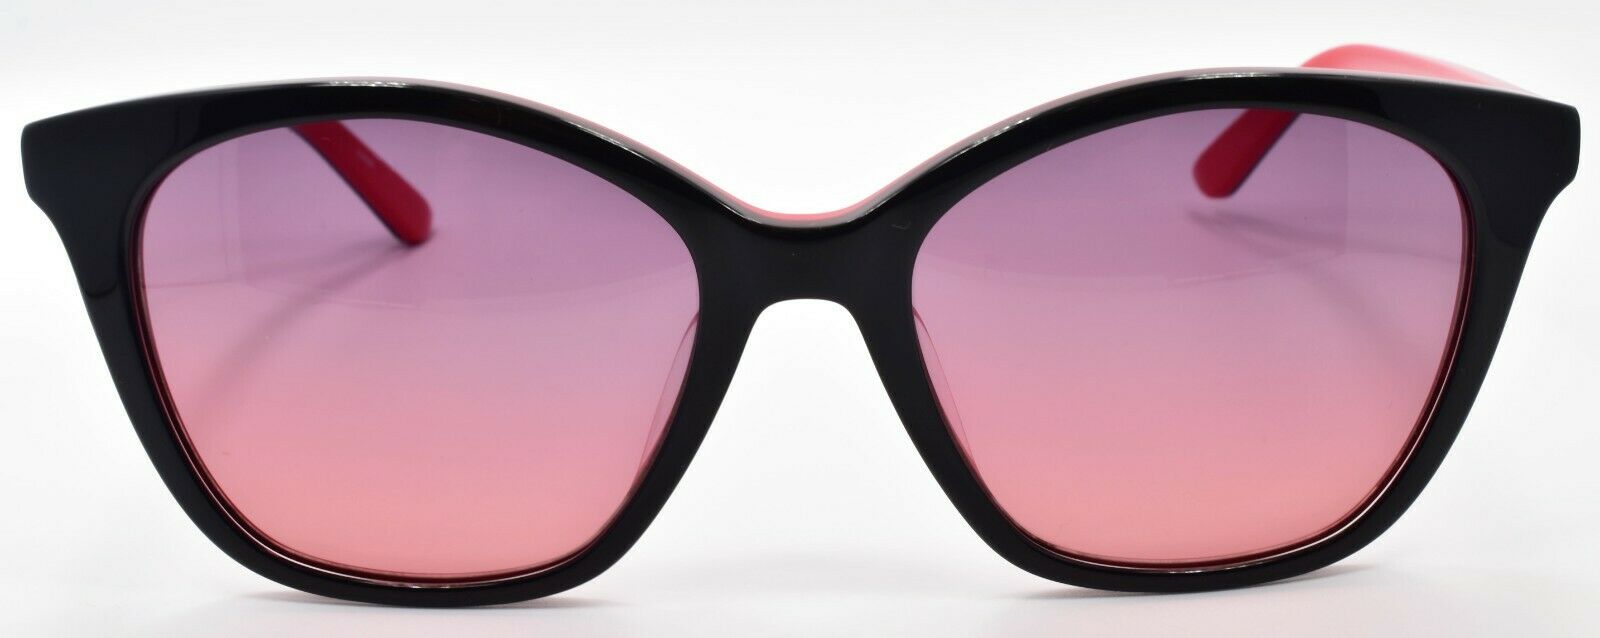 2-Calvin Klein CK19505S Women's Sunglasses Cat-eye 54-18-135 Black / Azalea-883901114256-IKSpecs